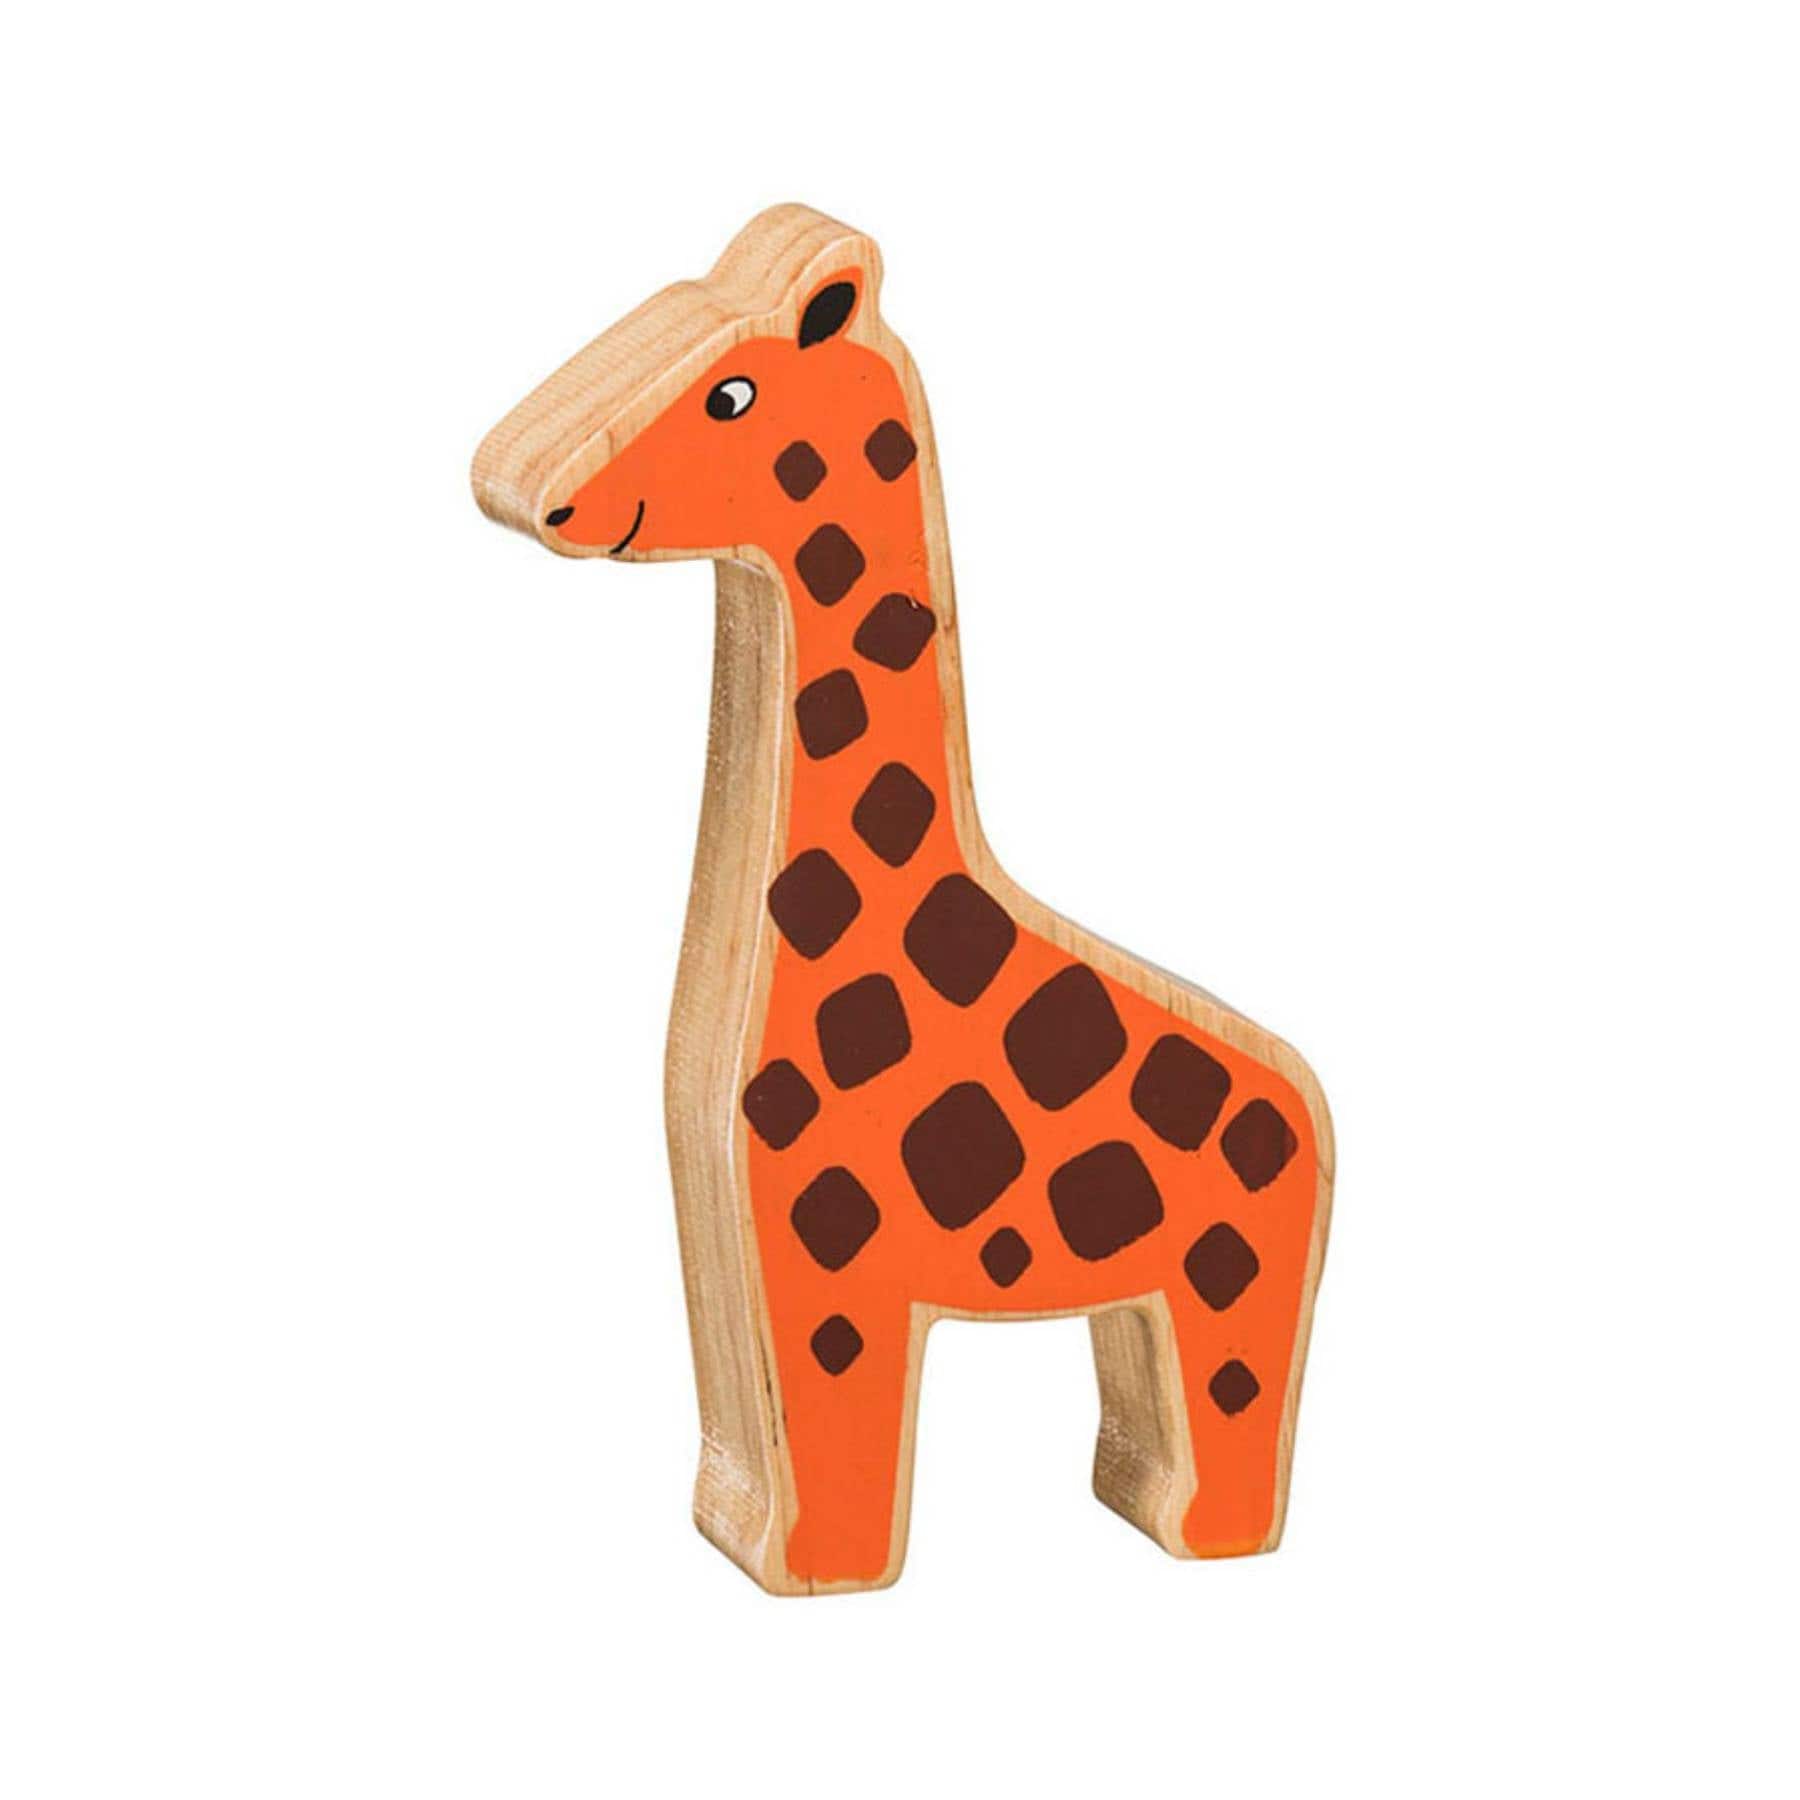 Wooden giraffe figure